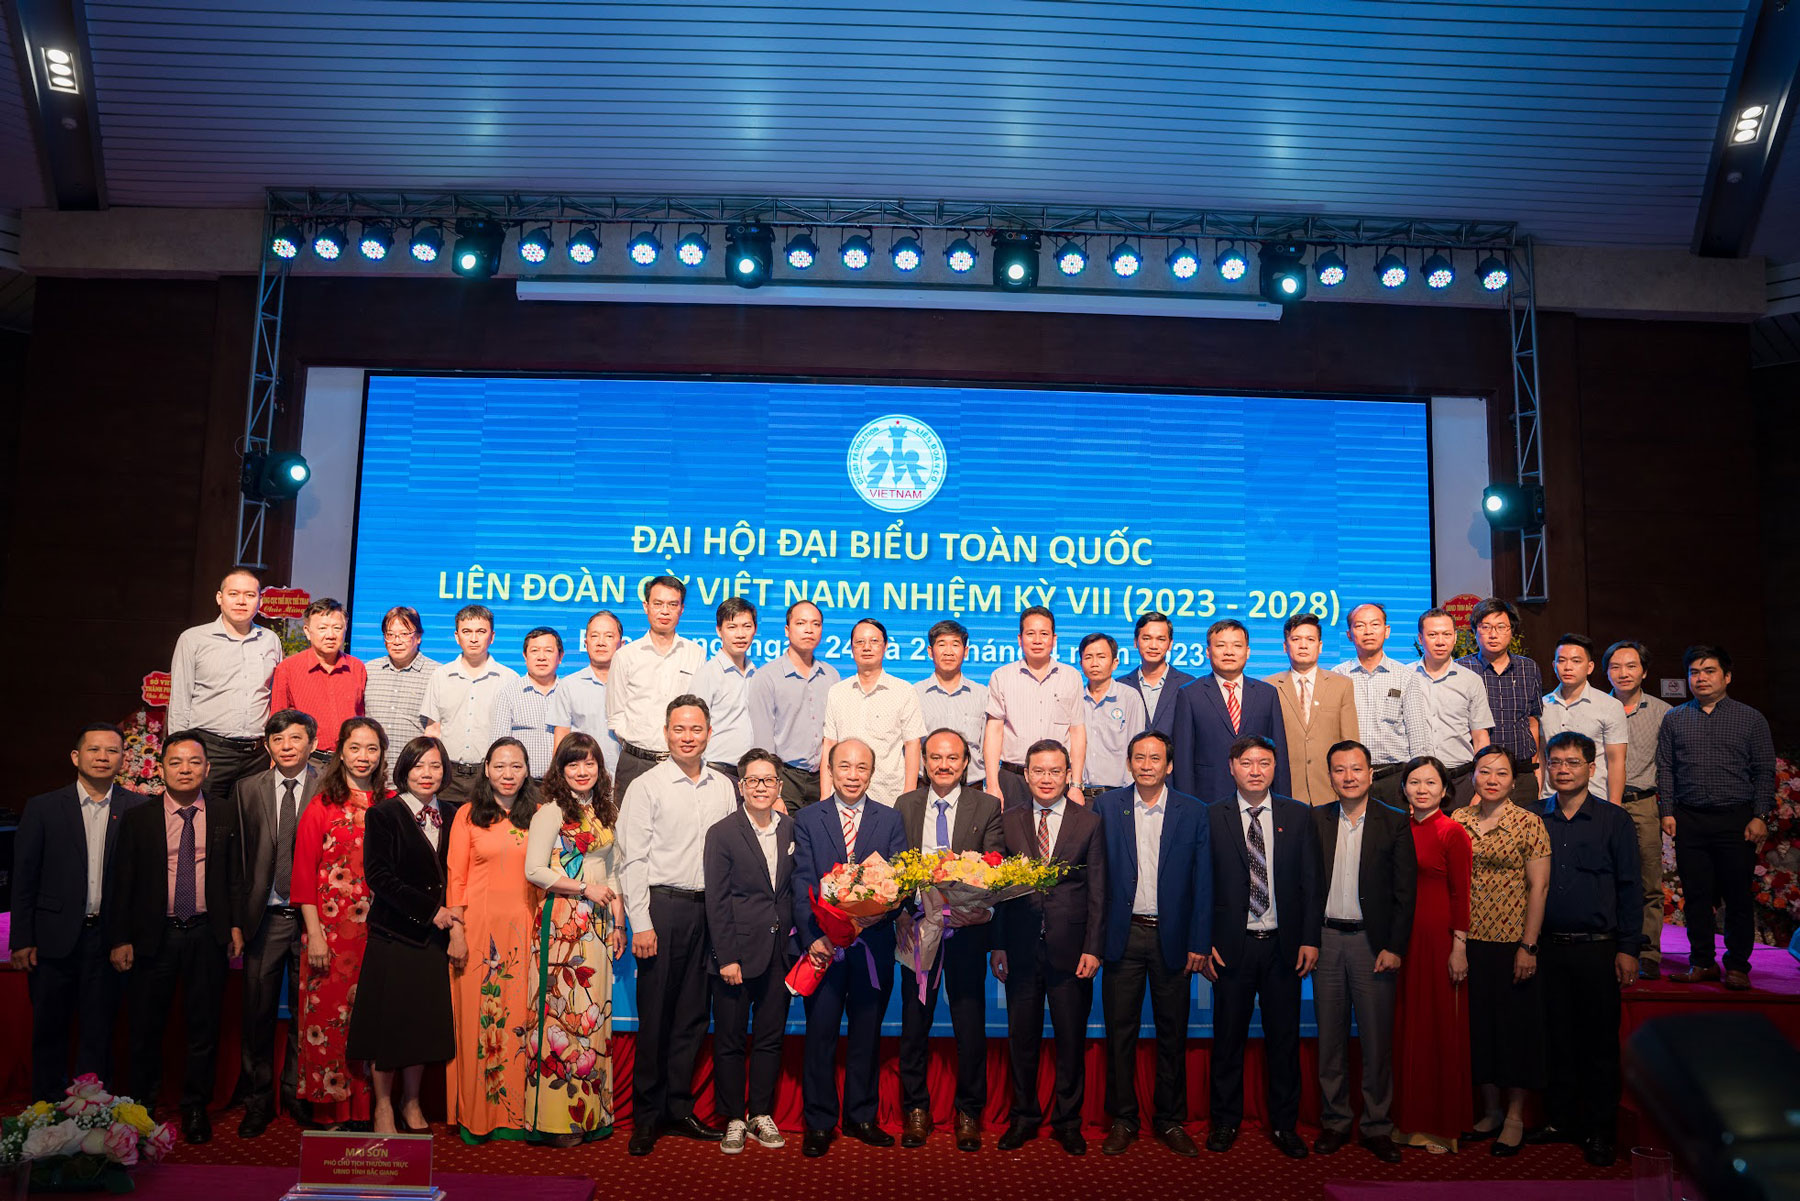 Đại hội Đại biểu toàn quốc Liên đoàn Cờ Việt Nam nhiệm kỳ VII (2023-2028)